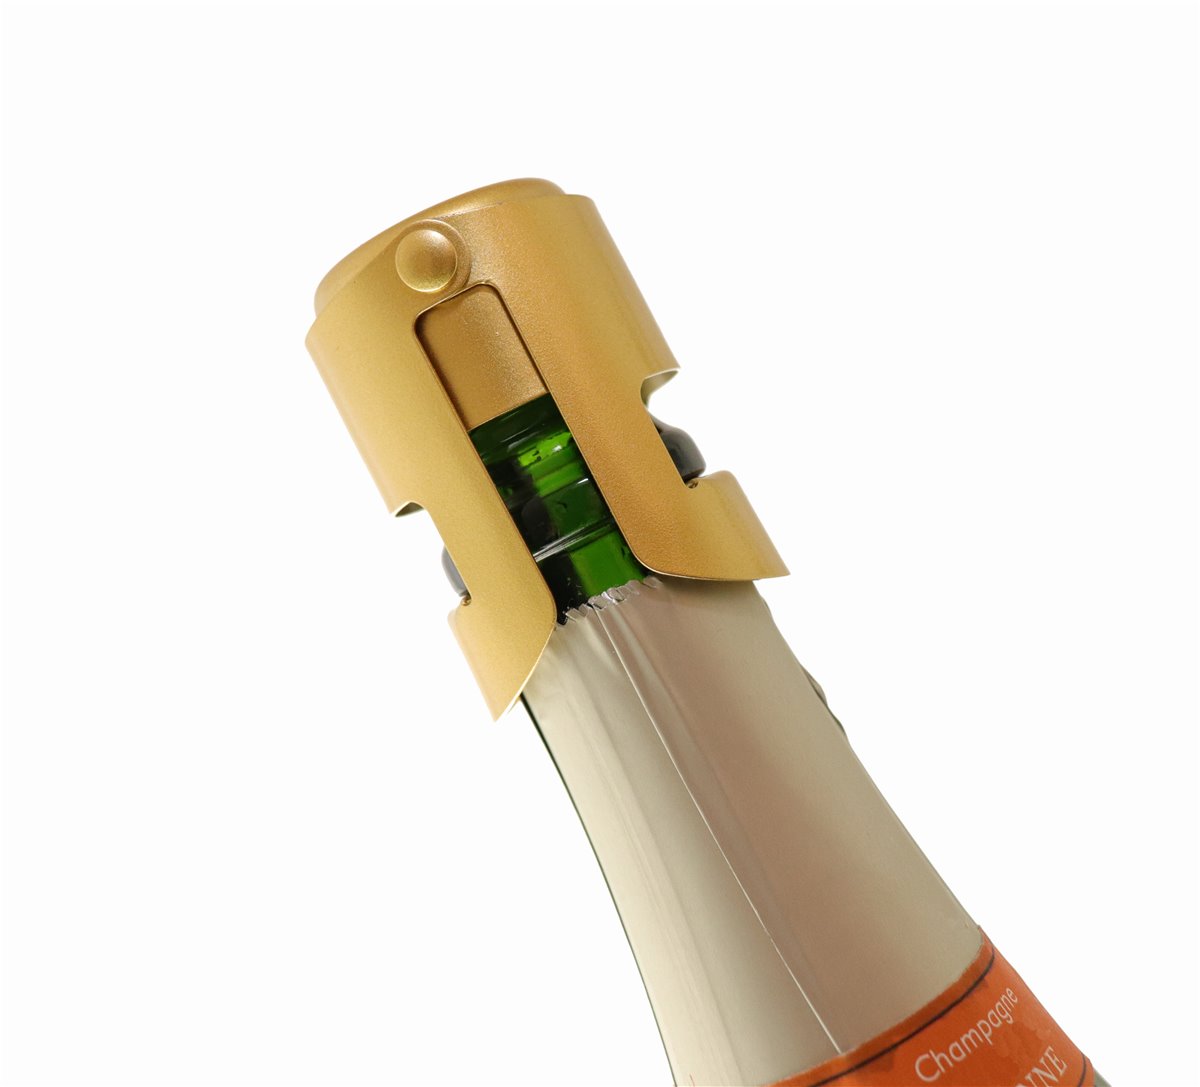 Gold Stopper - Sektverschluss in edlem GOLD - schließt Ihre Champagner, Sekt, Cremant oder Prosecco Flasche und hält sie frisch
